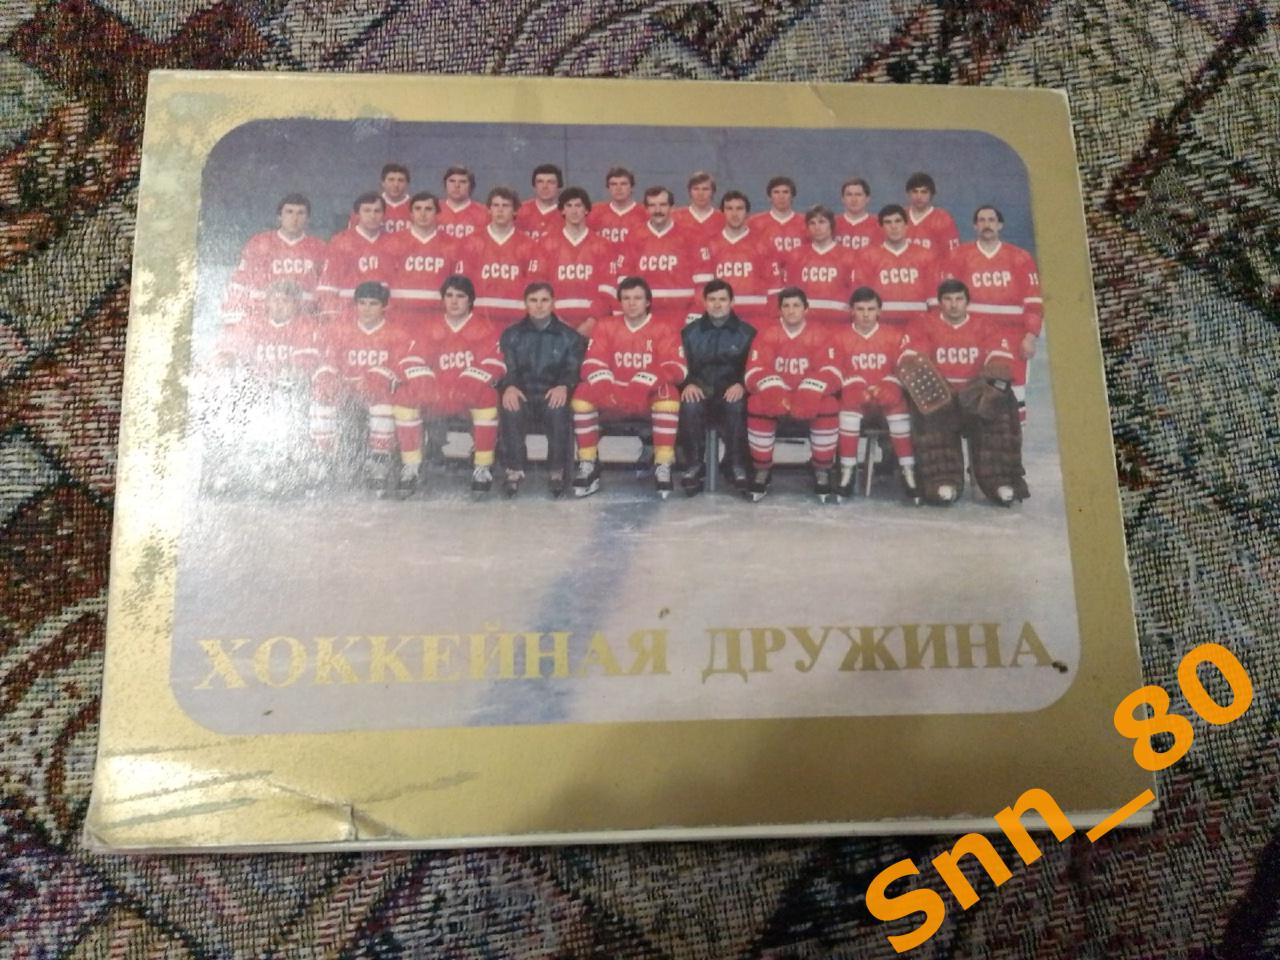 6 Хоккейная дружина Сборная СССР по хоккею 1983 (31,8) 24 открытки